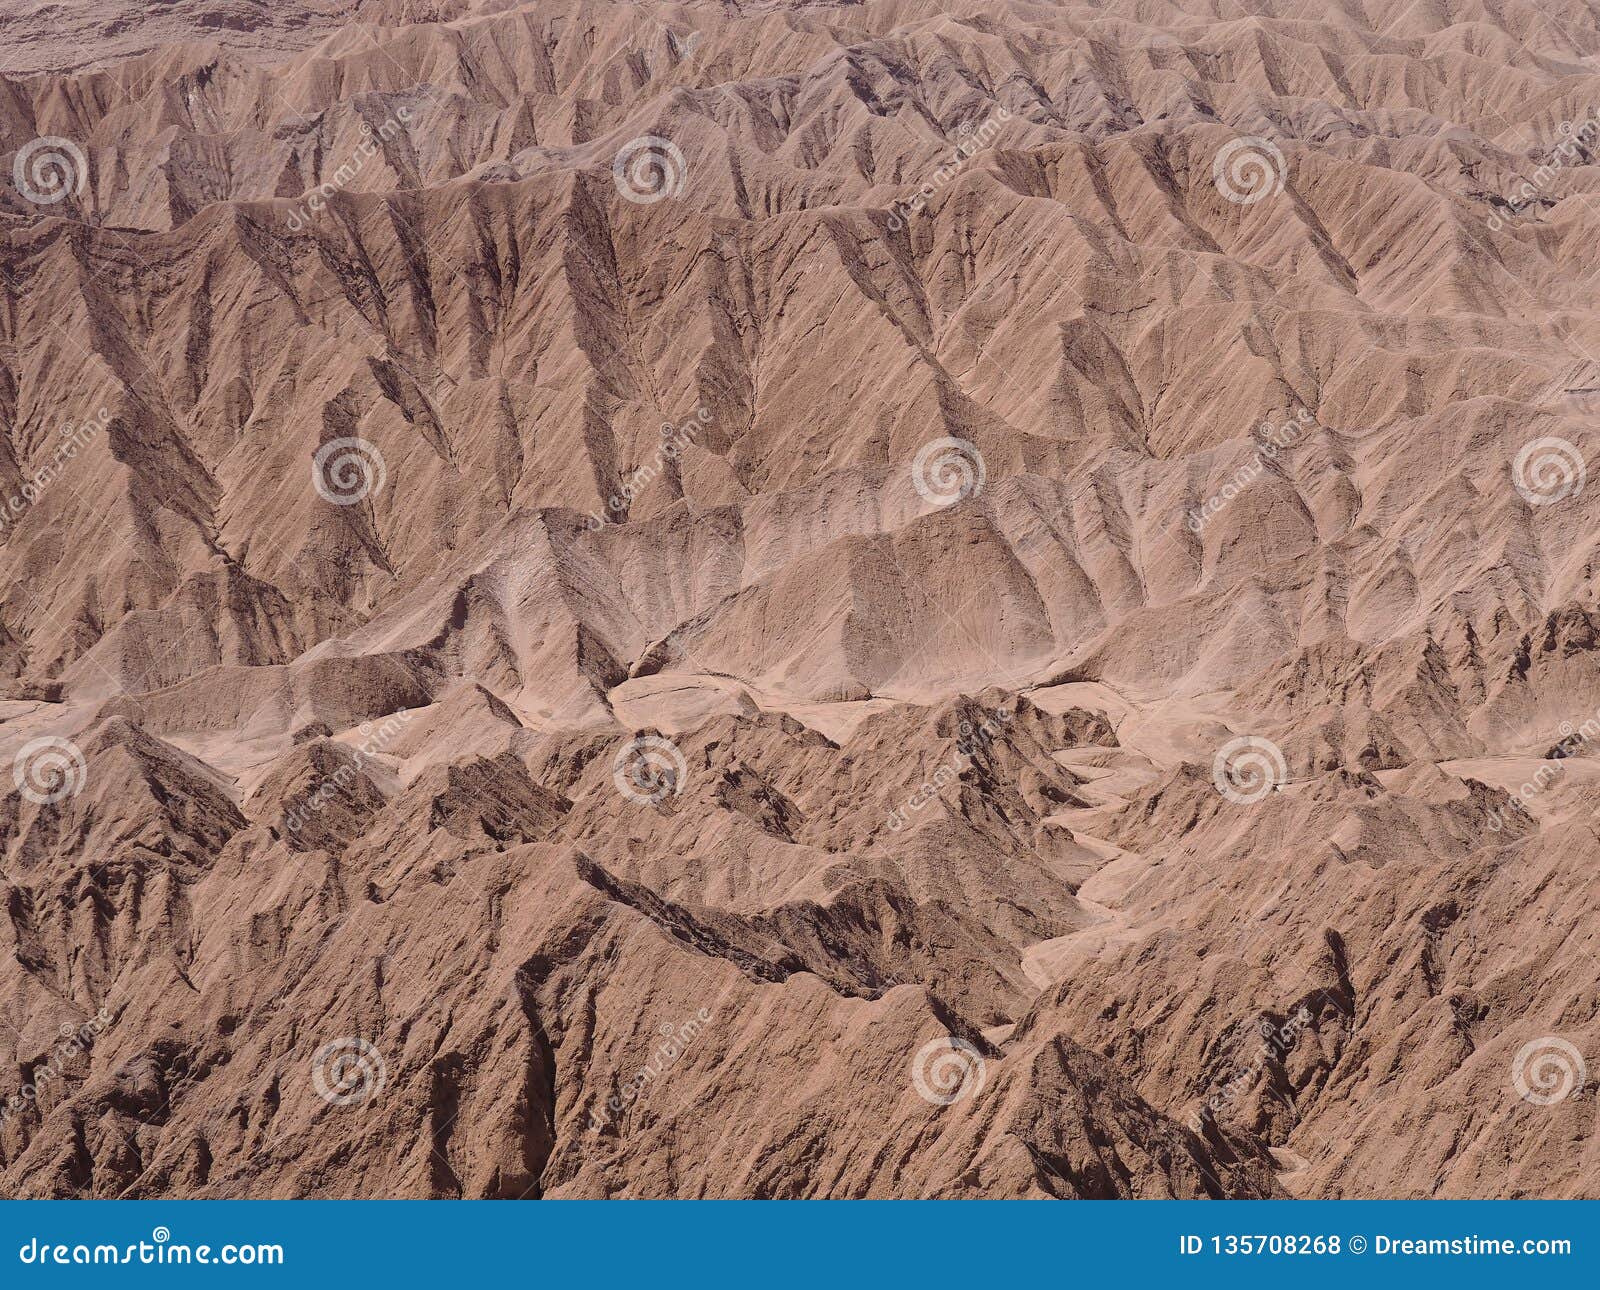 Горные породы в пустыне Atacama. â€œPhotograph или рисовать?  â€ могло быть первым вопросом когда наблюдать воду сделал форму этих горных пород в пустыне Atacama около San Pedro de Atacama в Чили